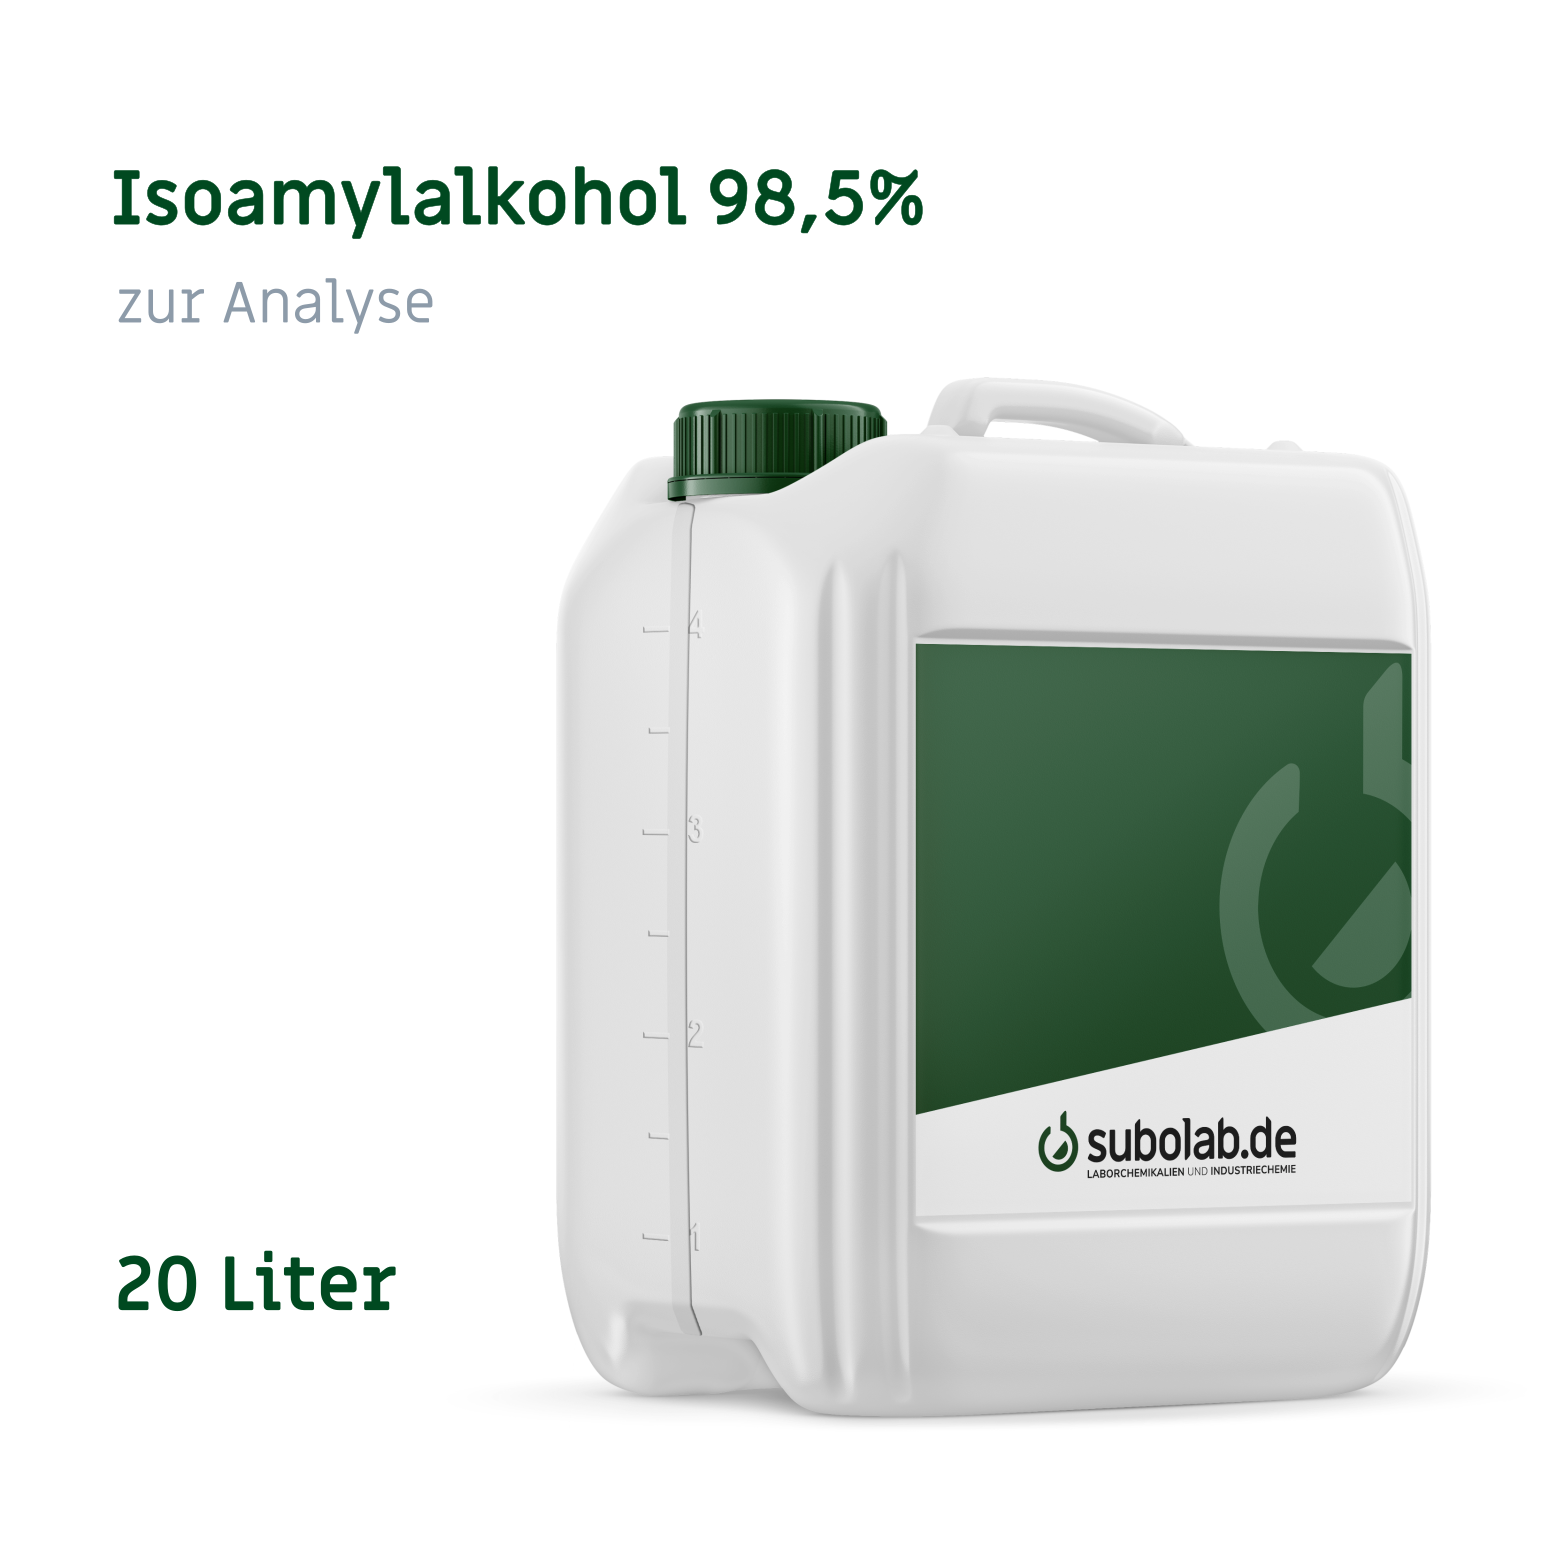 Bild von Isoamylalkohol 98,5% zur Analyse (20 Liter)